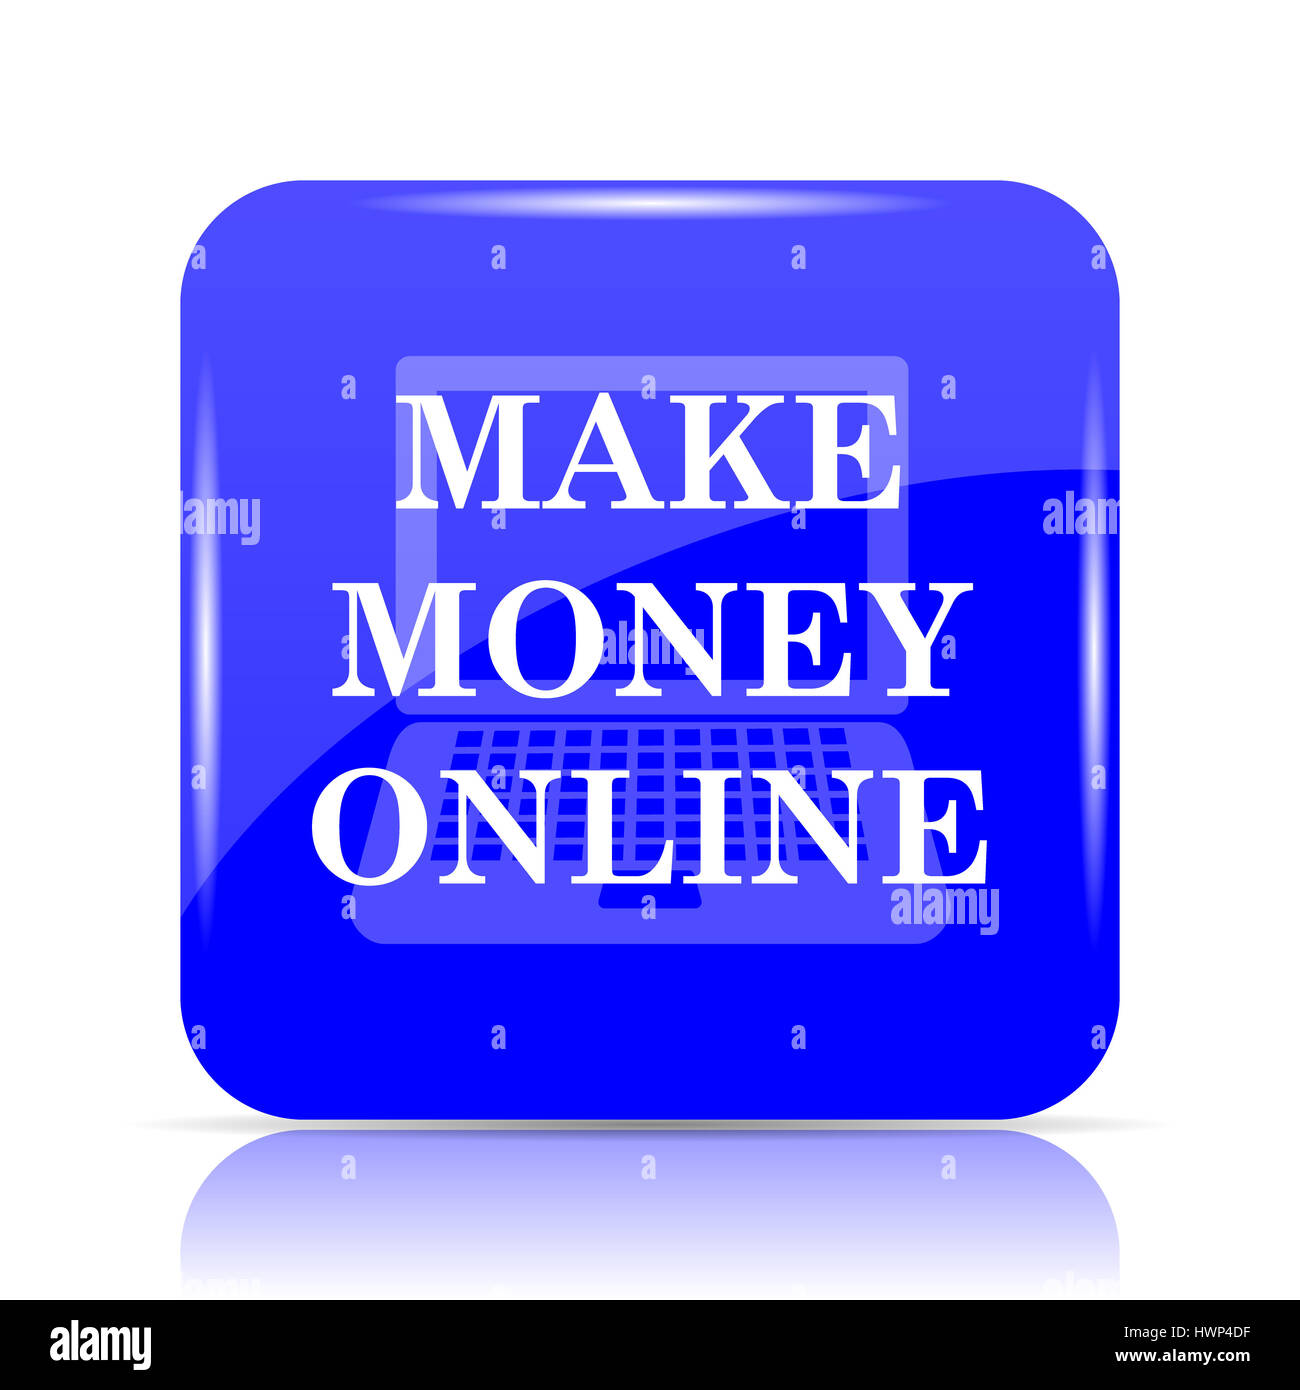 Bạn muốn kiếm tiền trực tuyến? Đừng bỏ lỡ cơ hội kiếm thêm thu nhập bằng cách làm việc từ xa với những cách kiếm tiền online hợp lý và đơn giản nhất.